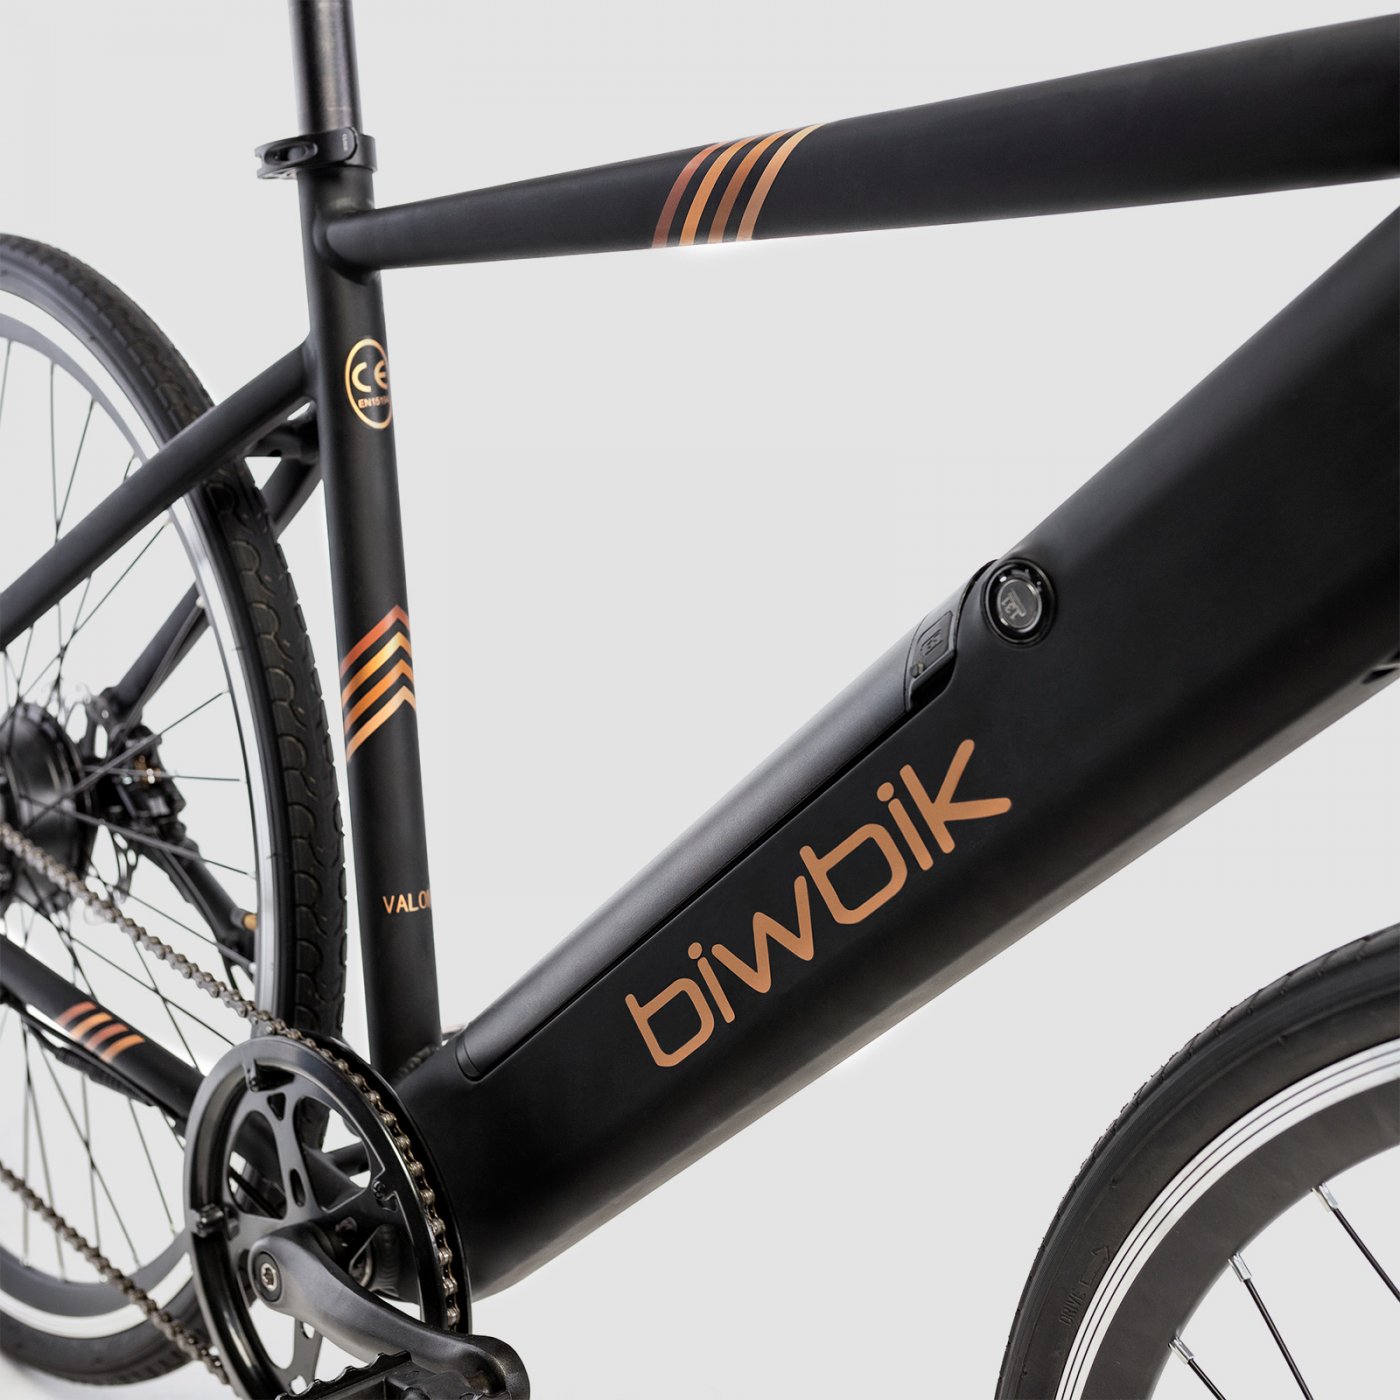 Bicicleta eléctrica plegable de Lidl: características, precio y